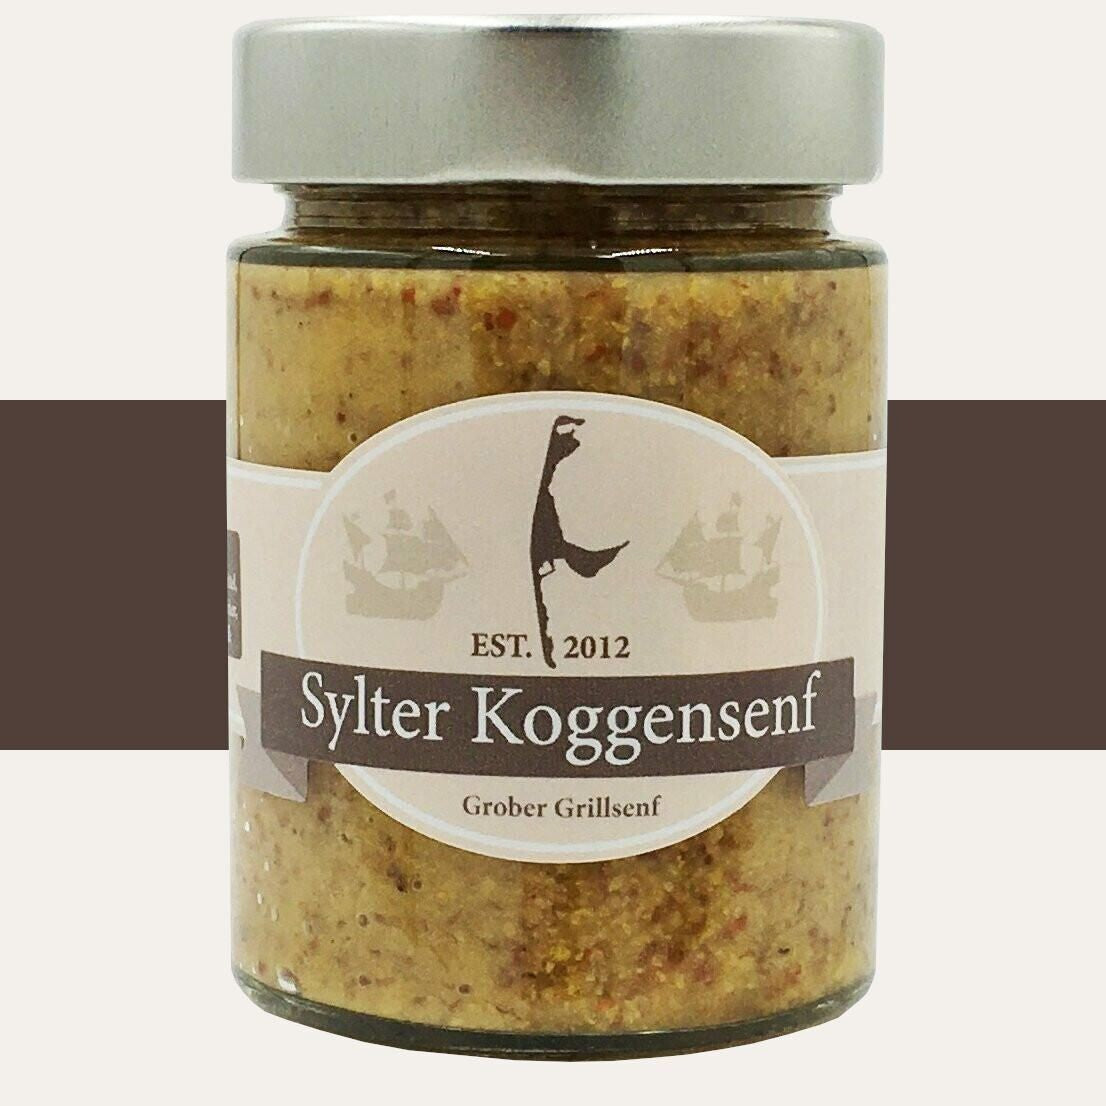 Sylter Koggensenf - Grober Grillsenf